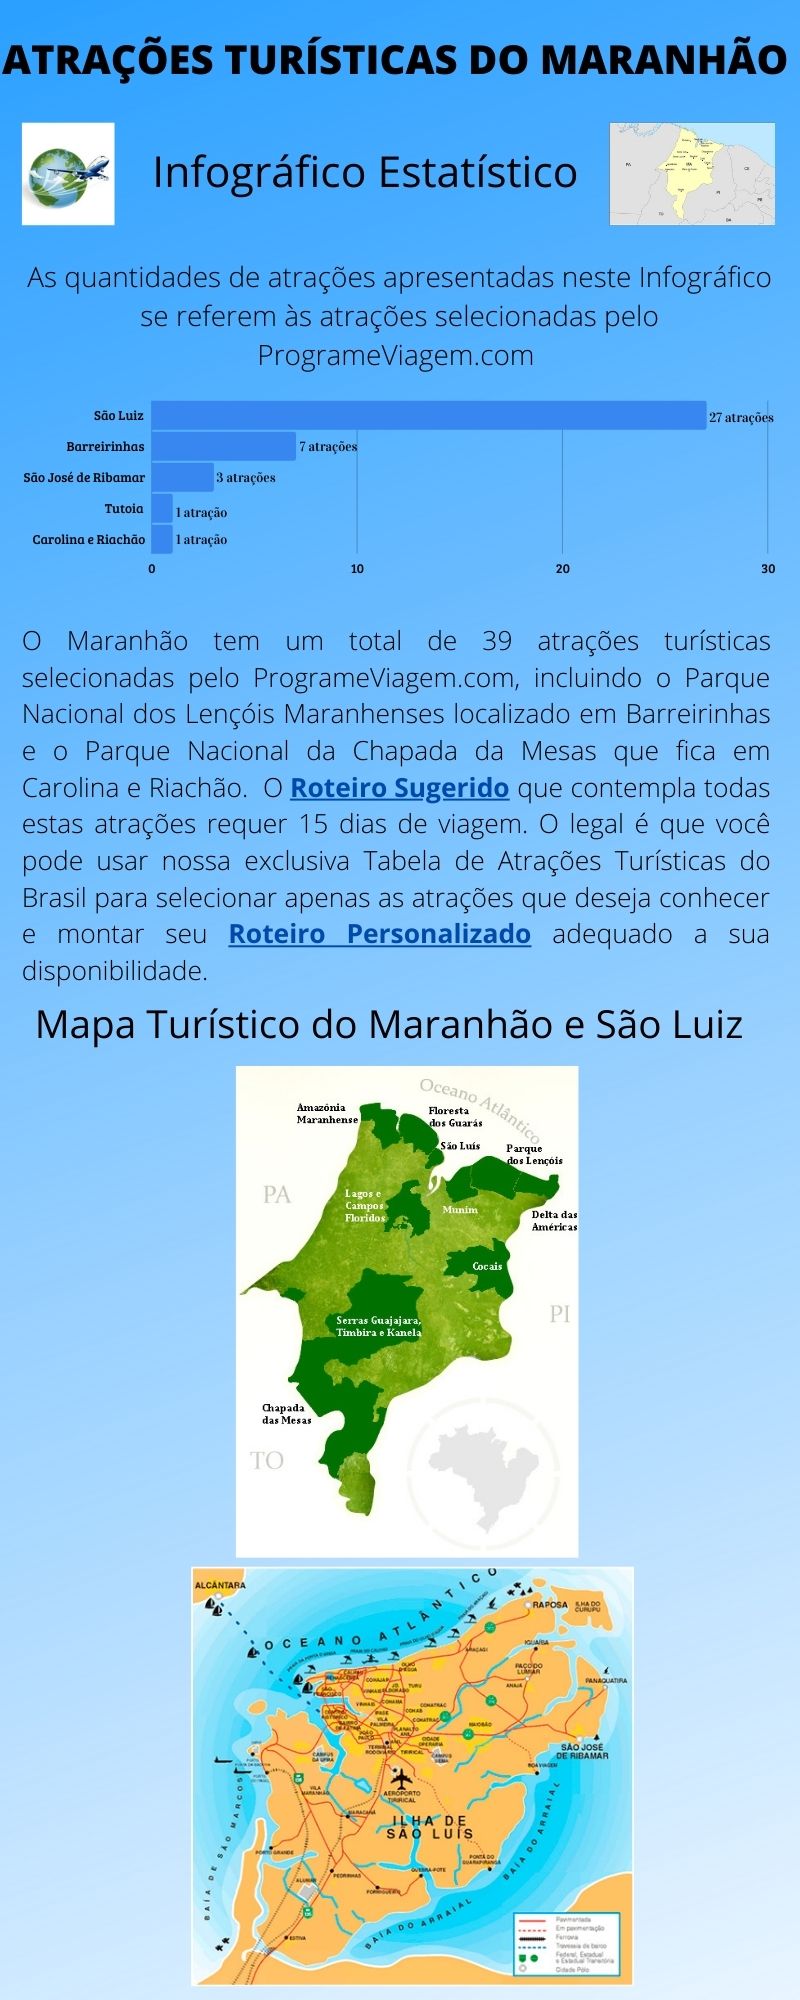 Infográfico Atrações Turísticas do Maranhão